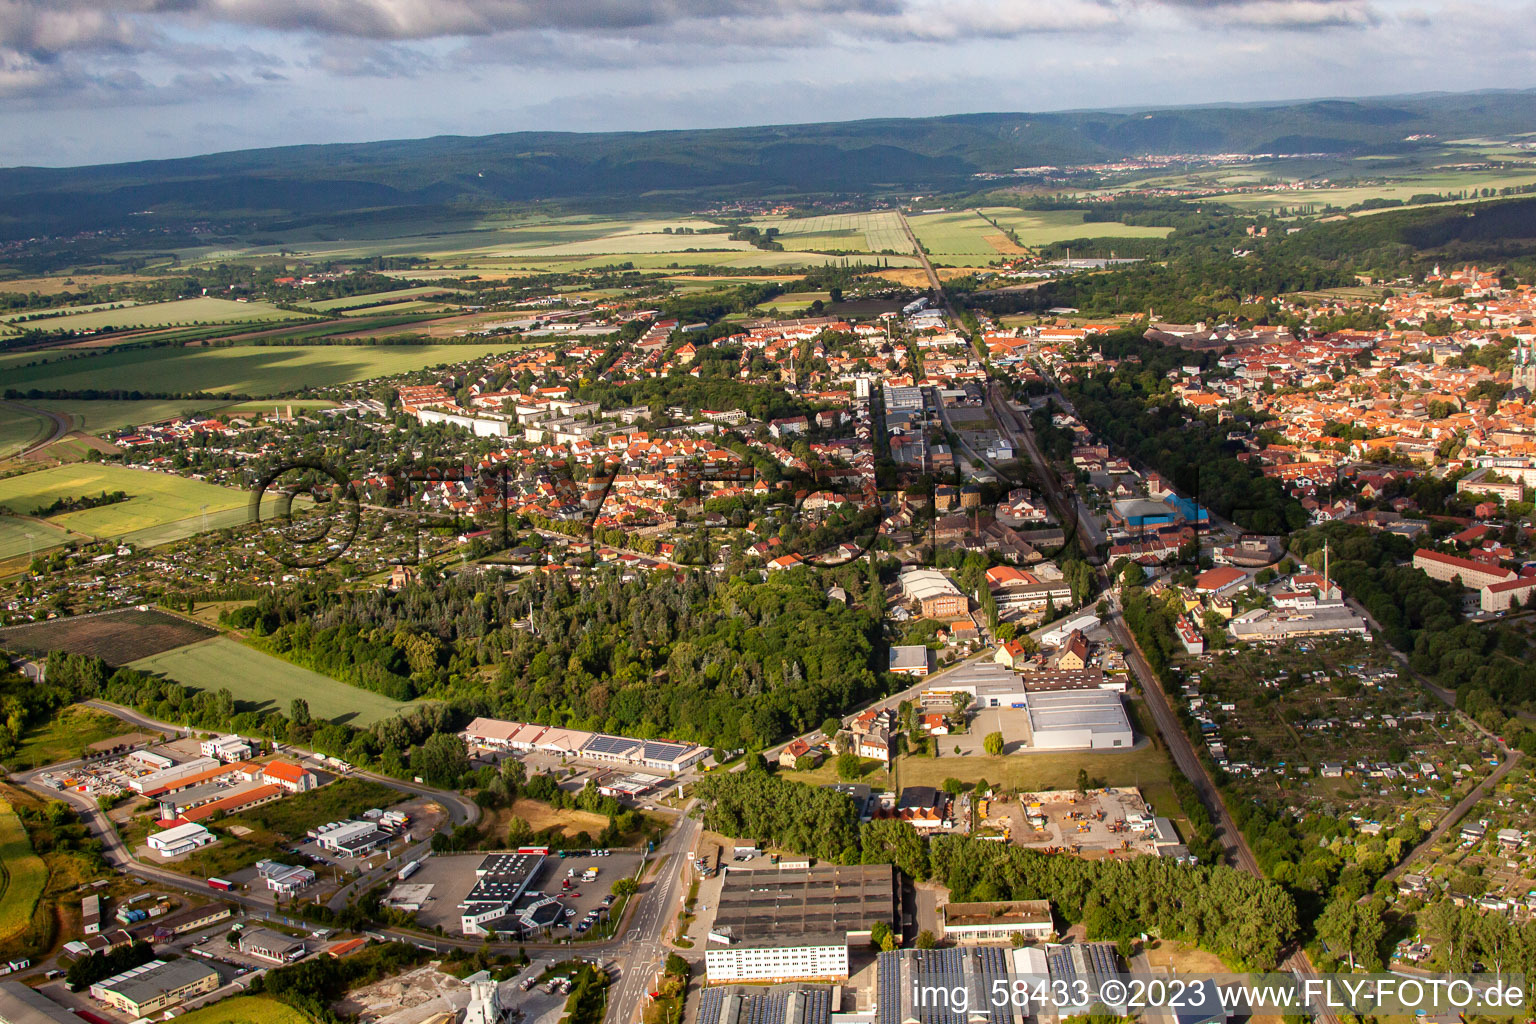 Vue aérienne de Cimetière central à Quedlinburg dans le département Saxe-Anhalt, Allemagne